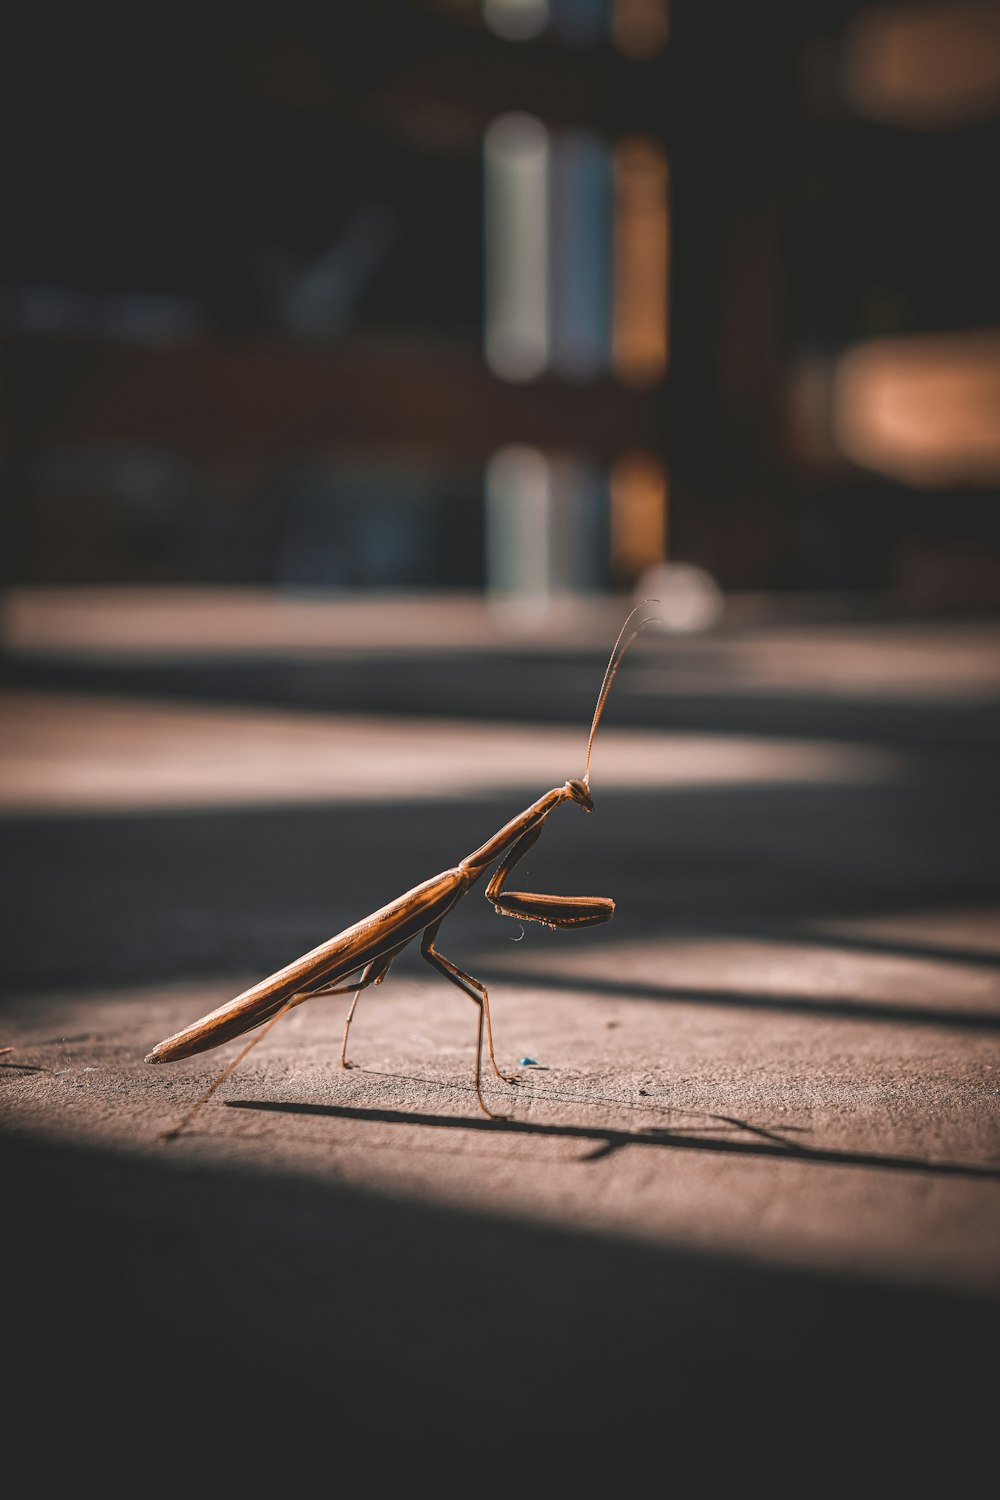 brown praying mantis on grey concrete floor during daytime